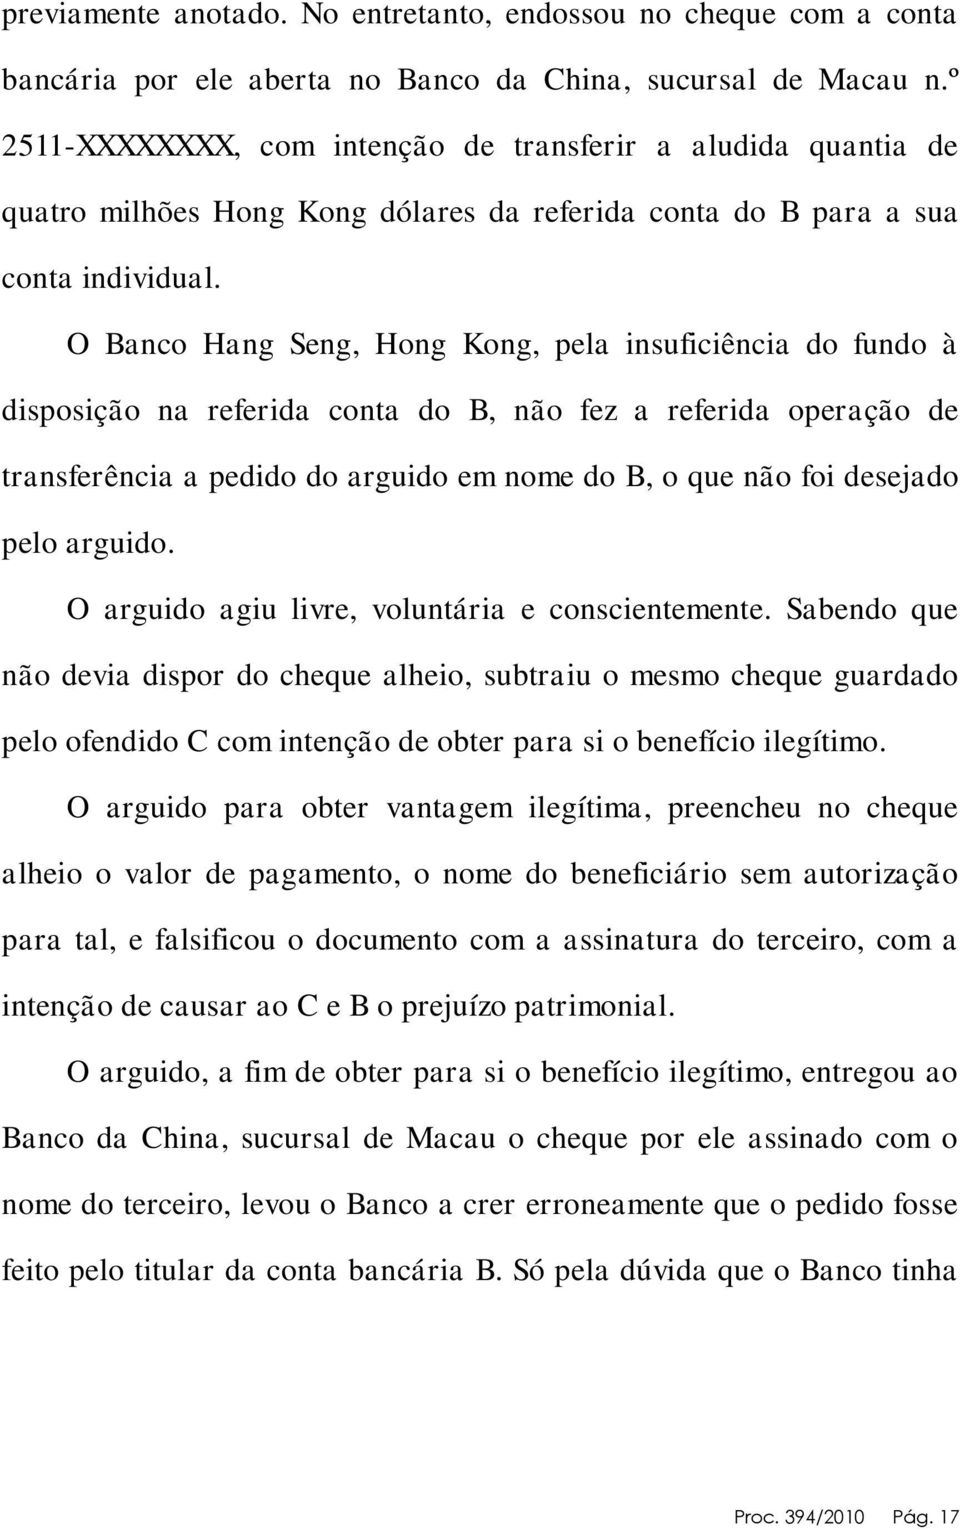 O Banco Hang Seng, Hong Kong, pela insuficiência do fundo à disposição na referida conta do B, não fez a referida operação de transferência a pedido do arguido em nome do B, o que não foi desejado